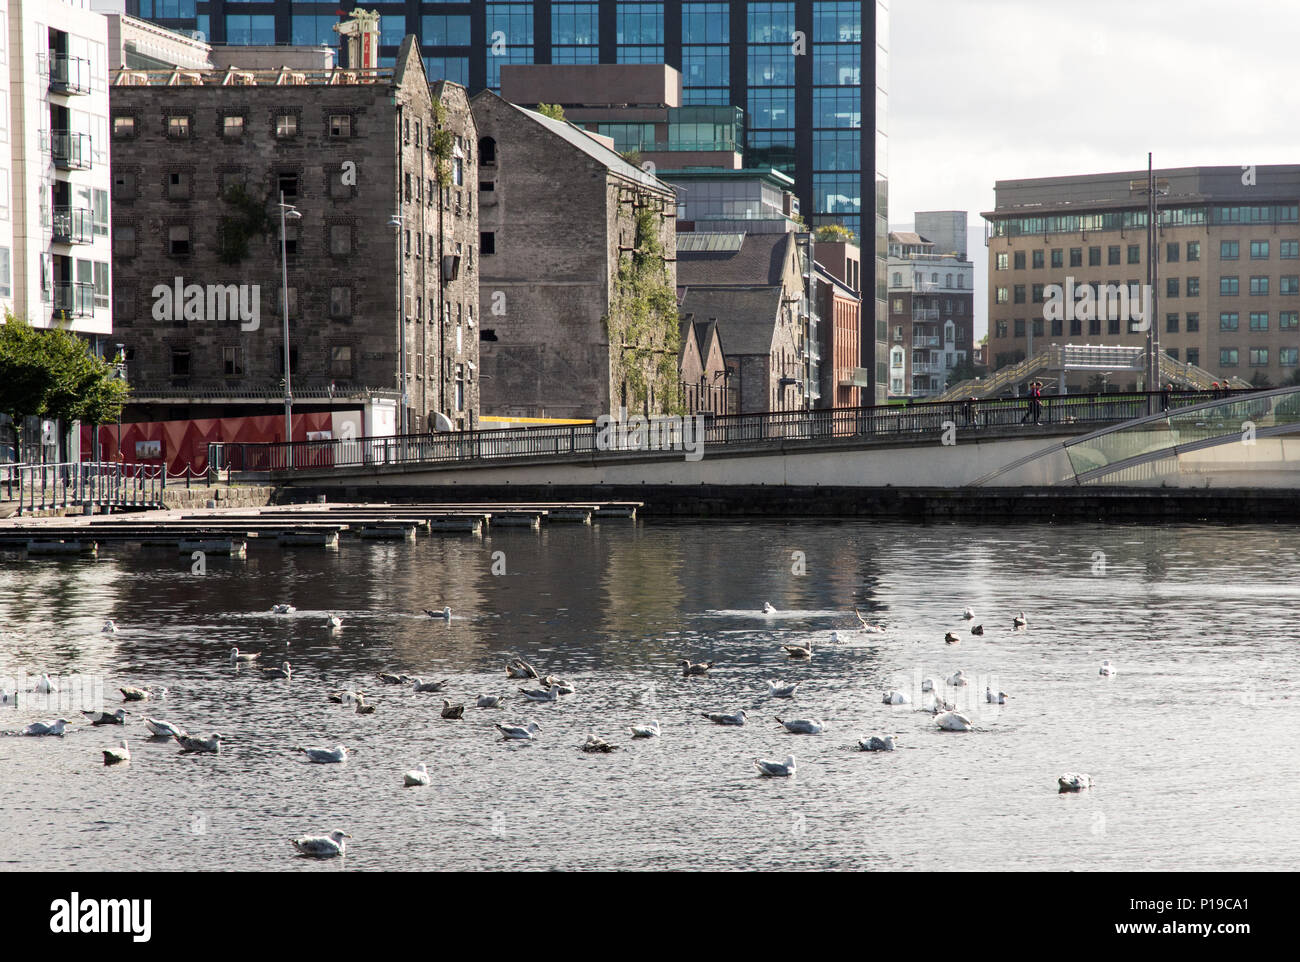 Dublino, Irlanda - 17 Settembre 2016: vecchi magazzini e uffici moderni e di edifici di appartamenti fianco a fianco sul Grand Canal Dock in Dublino è regene Foto Stock